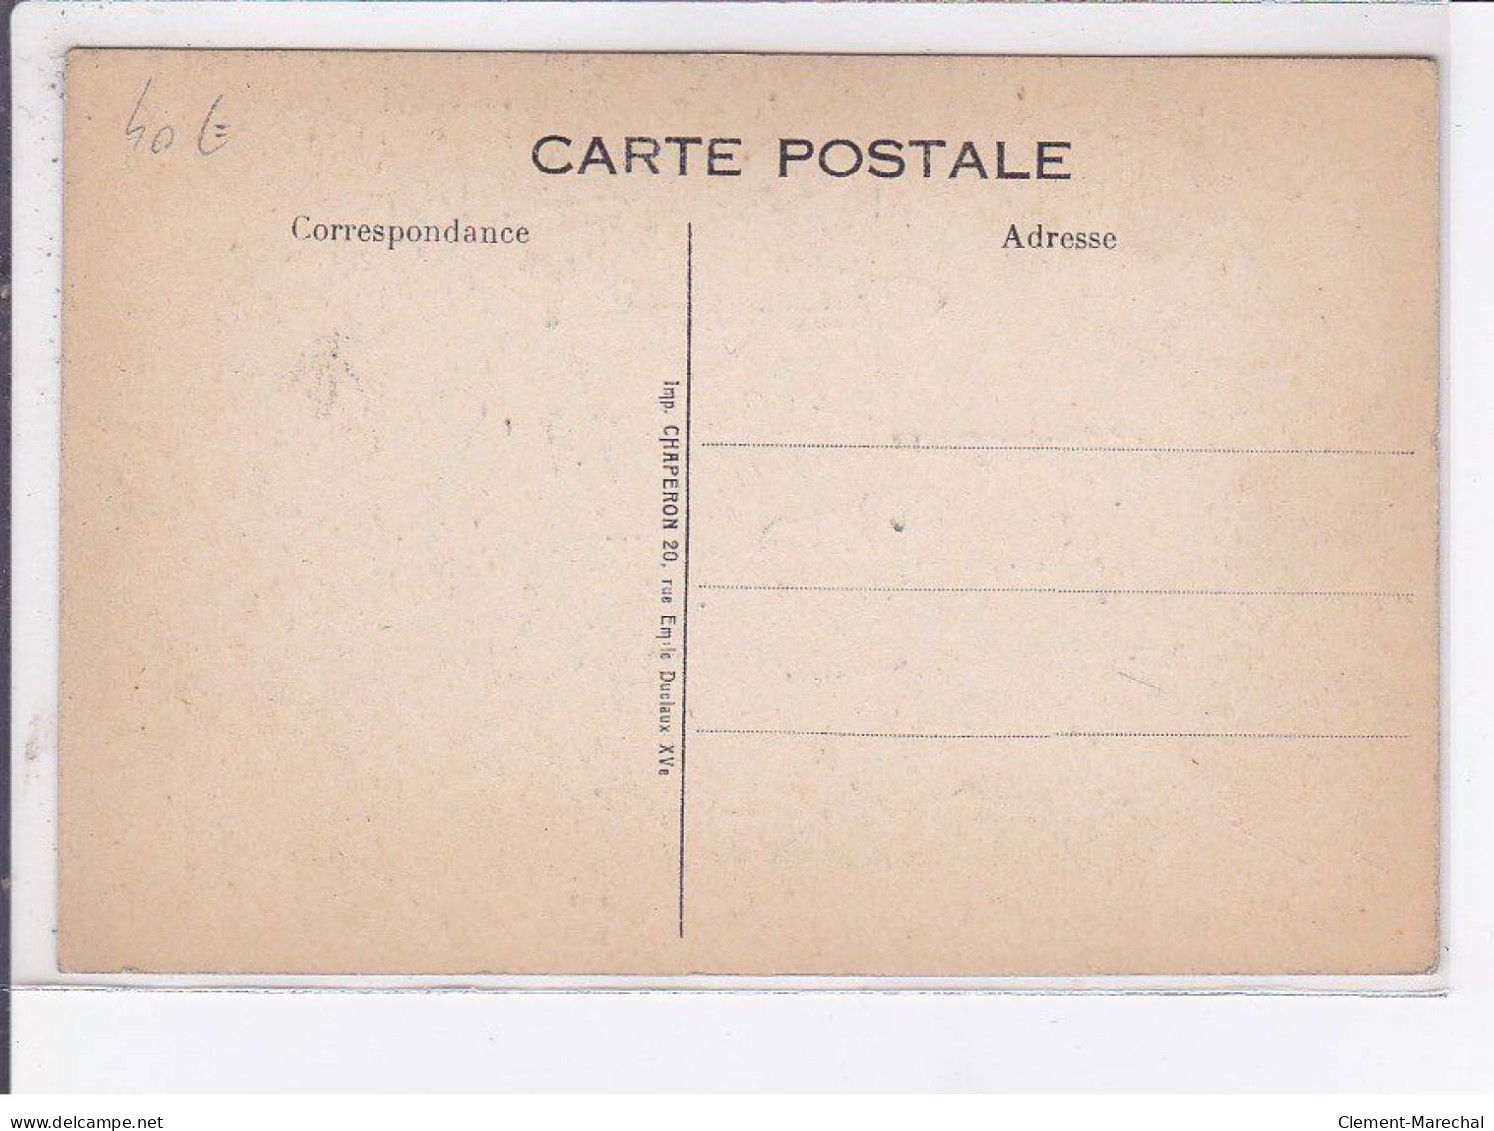 PUBLICITE: Ne Gaspille Pas Cette Carte Postal, Tango Du Chat, Chat Qui Prie - Très Bon état - Advertising